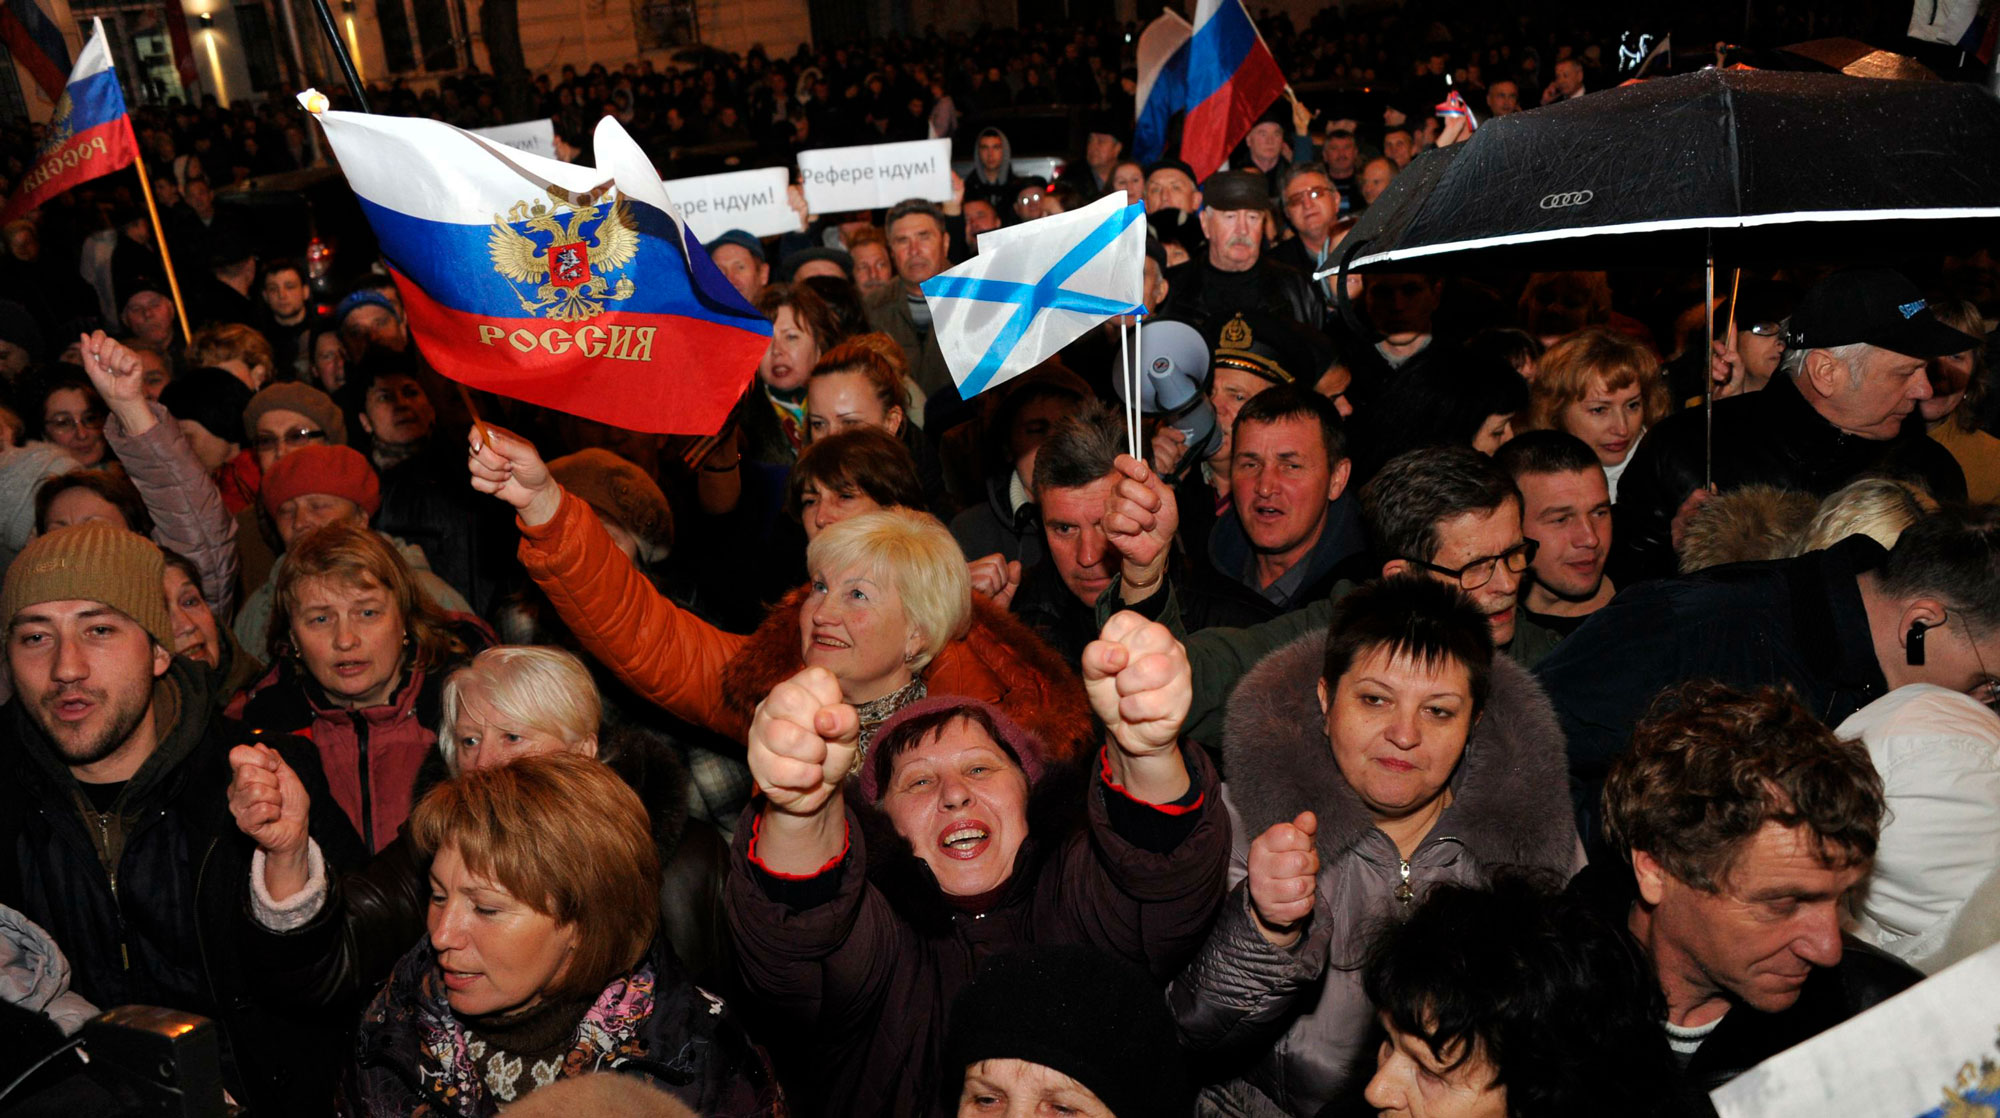 Юристы-международники при непосредственной поддержке правительства Республики Крым обосновали в докладе законность референдума 2014 года undefined